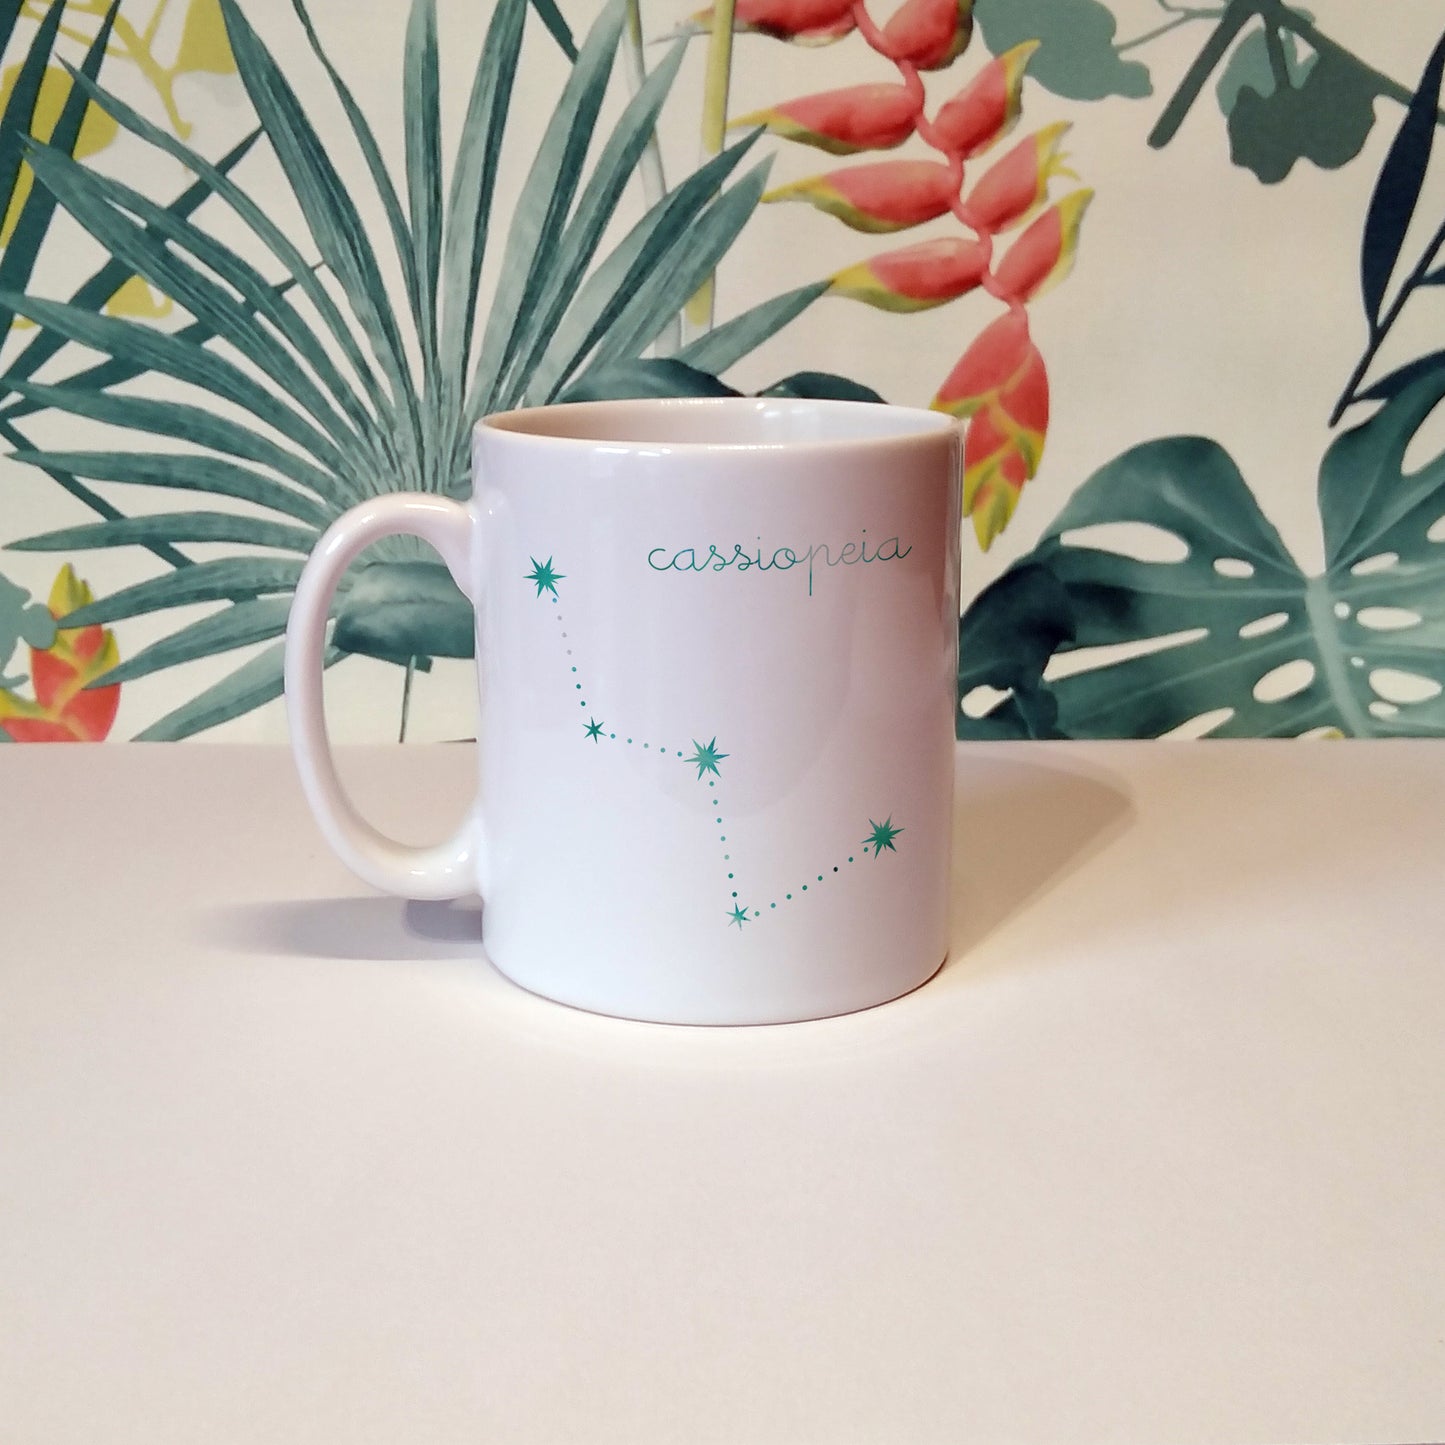 Cassiopeia constellation | Ceramic mug